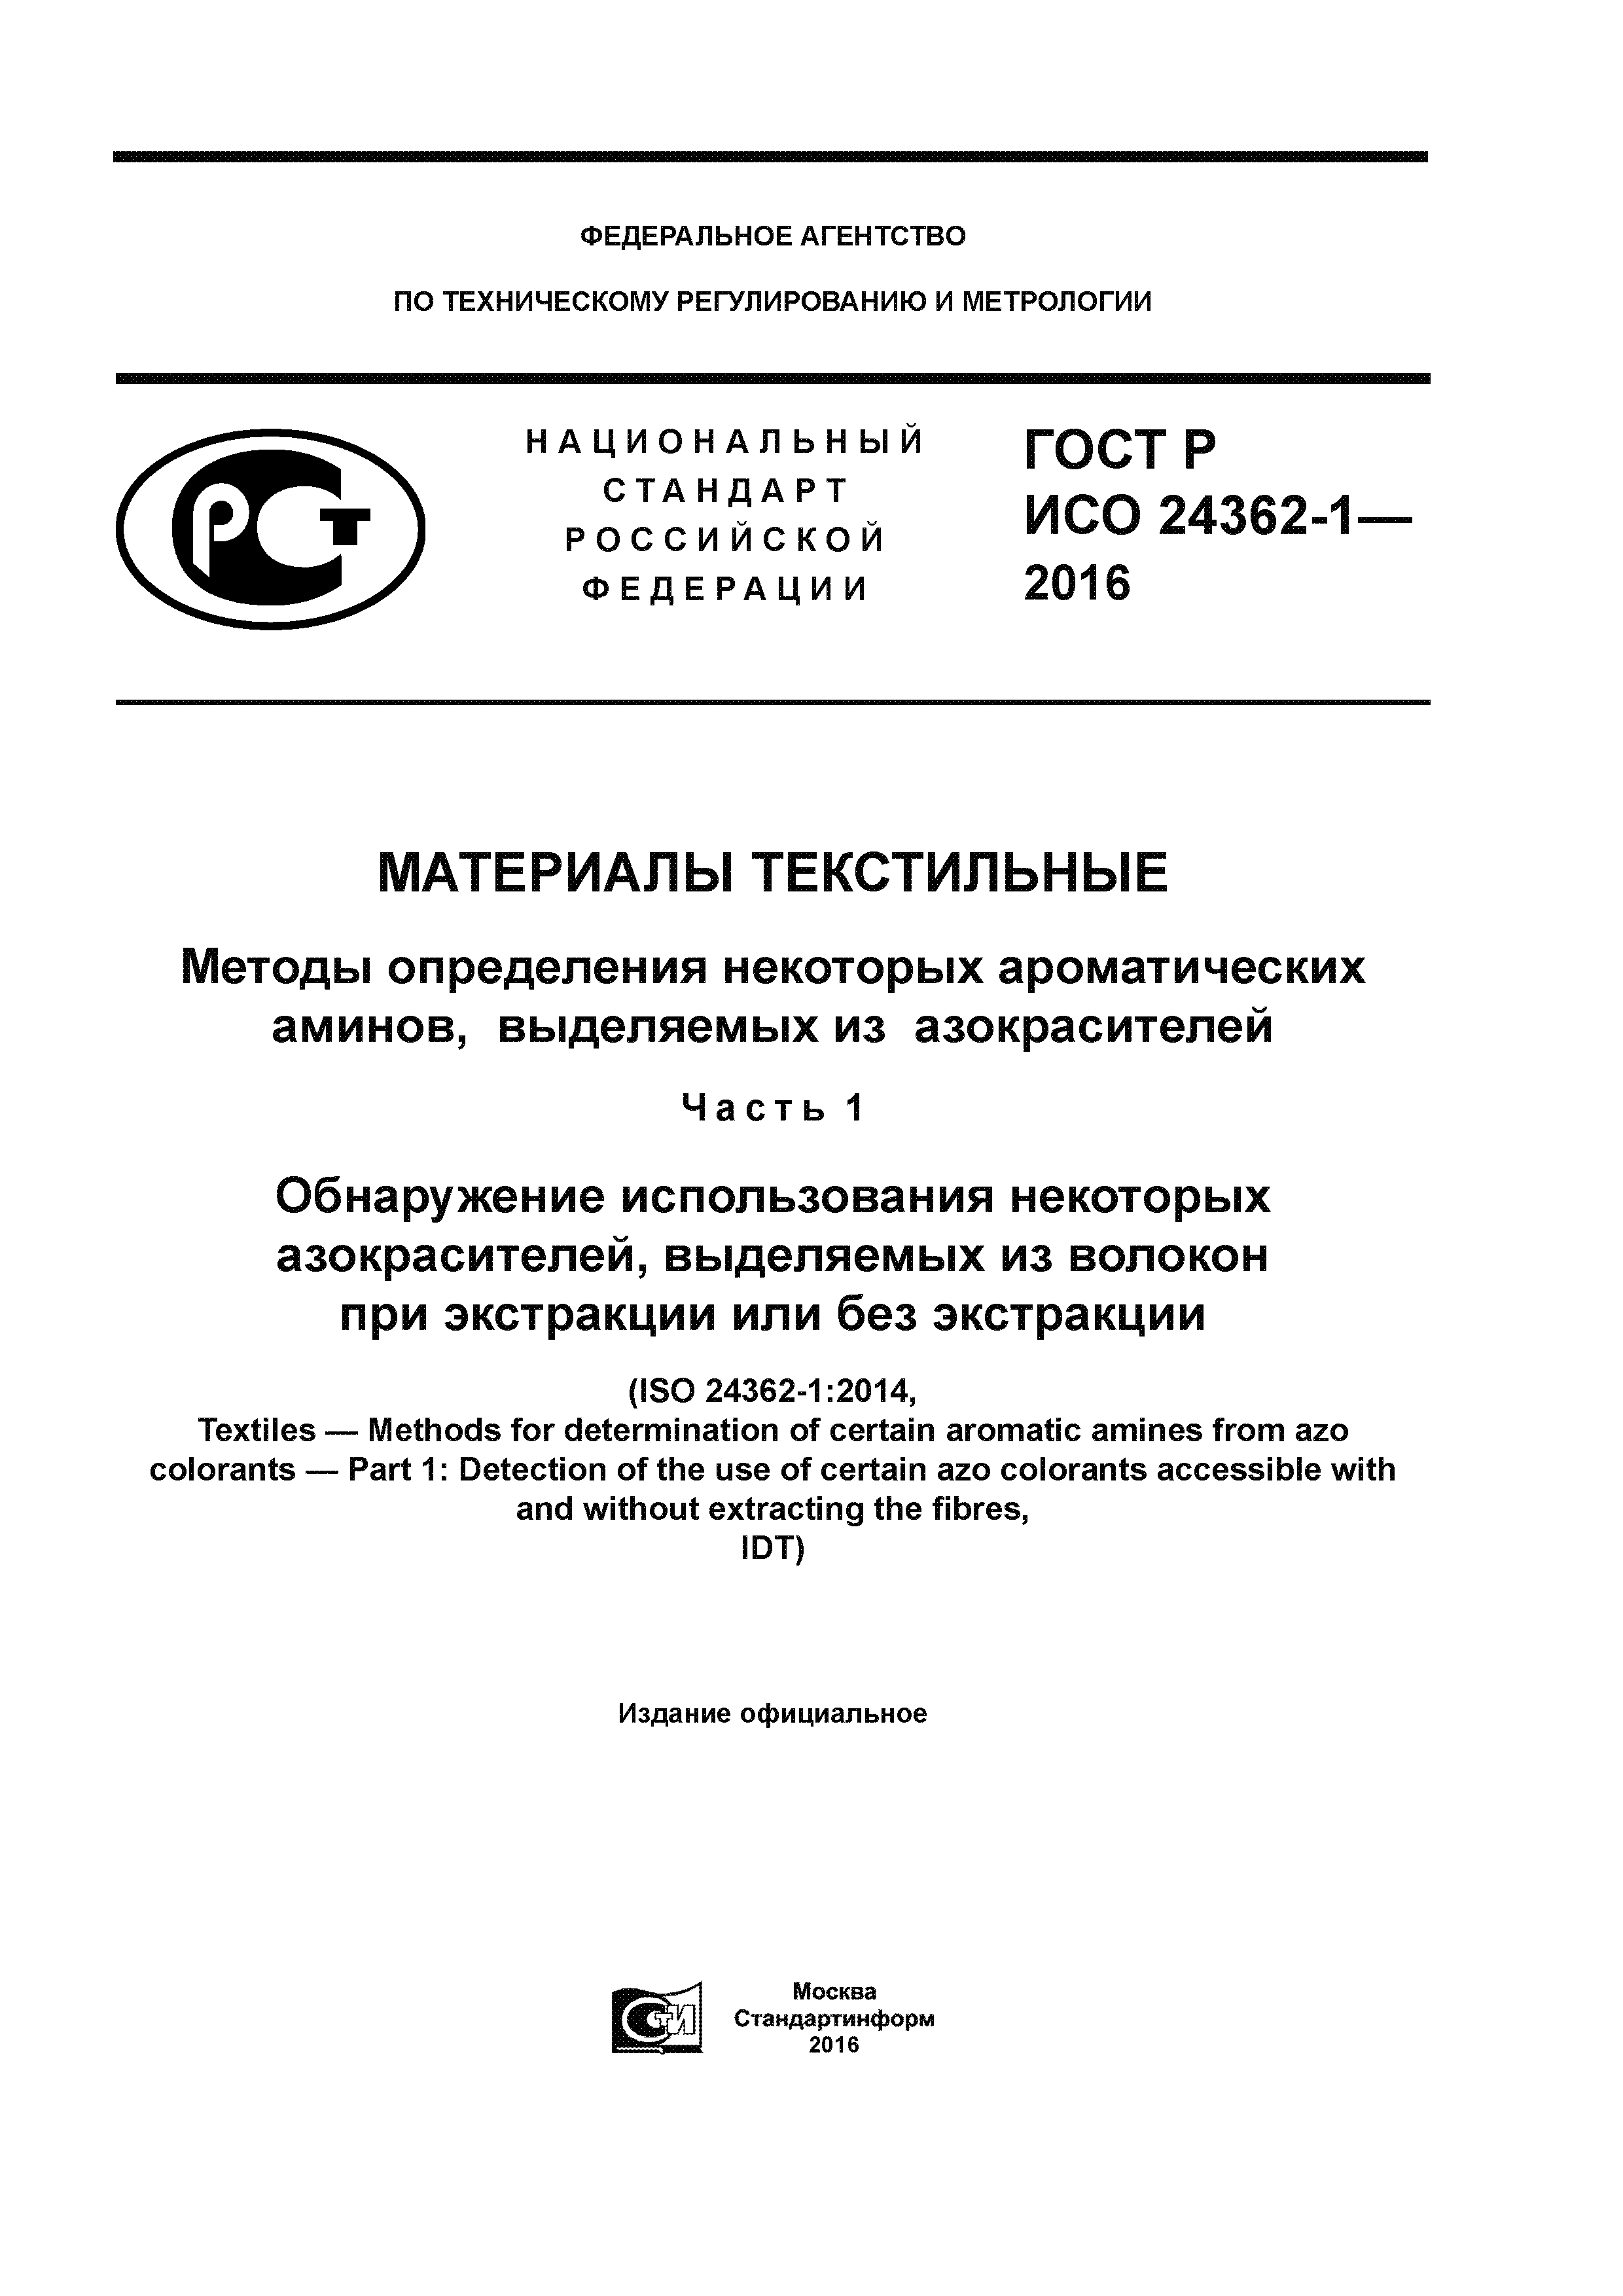 ГОСТ Р ИСО 24362-1-2016